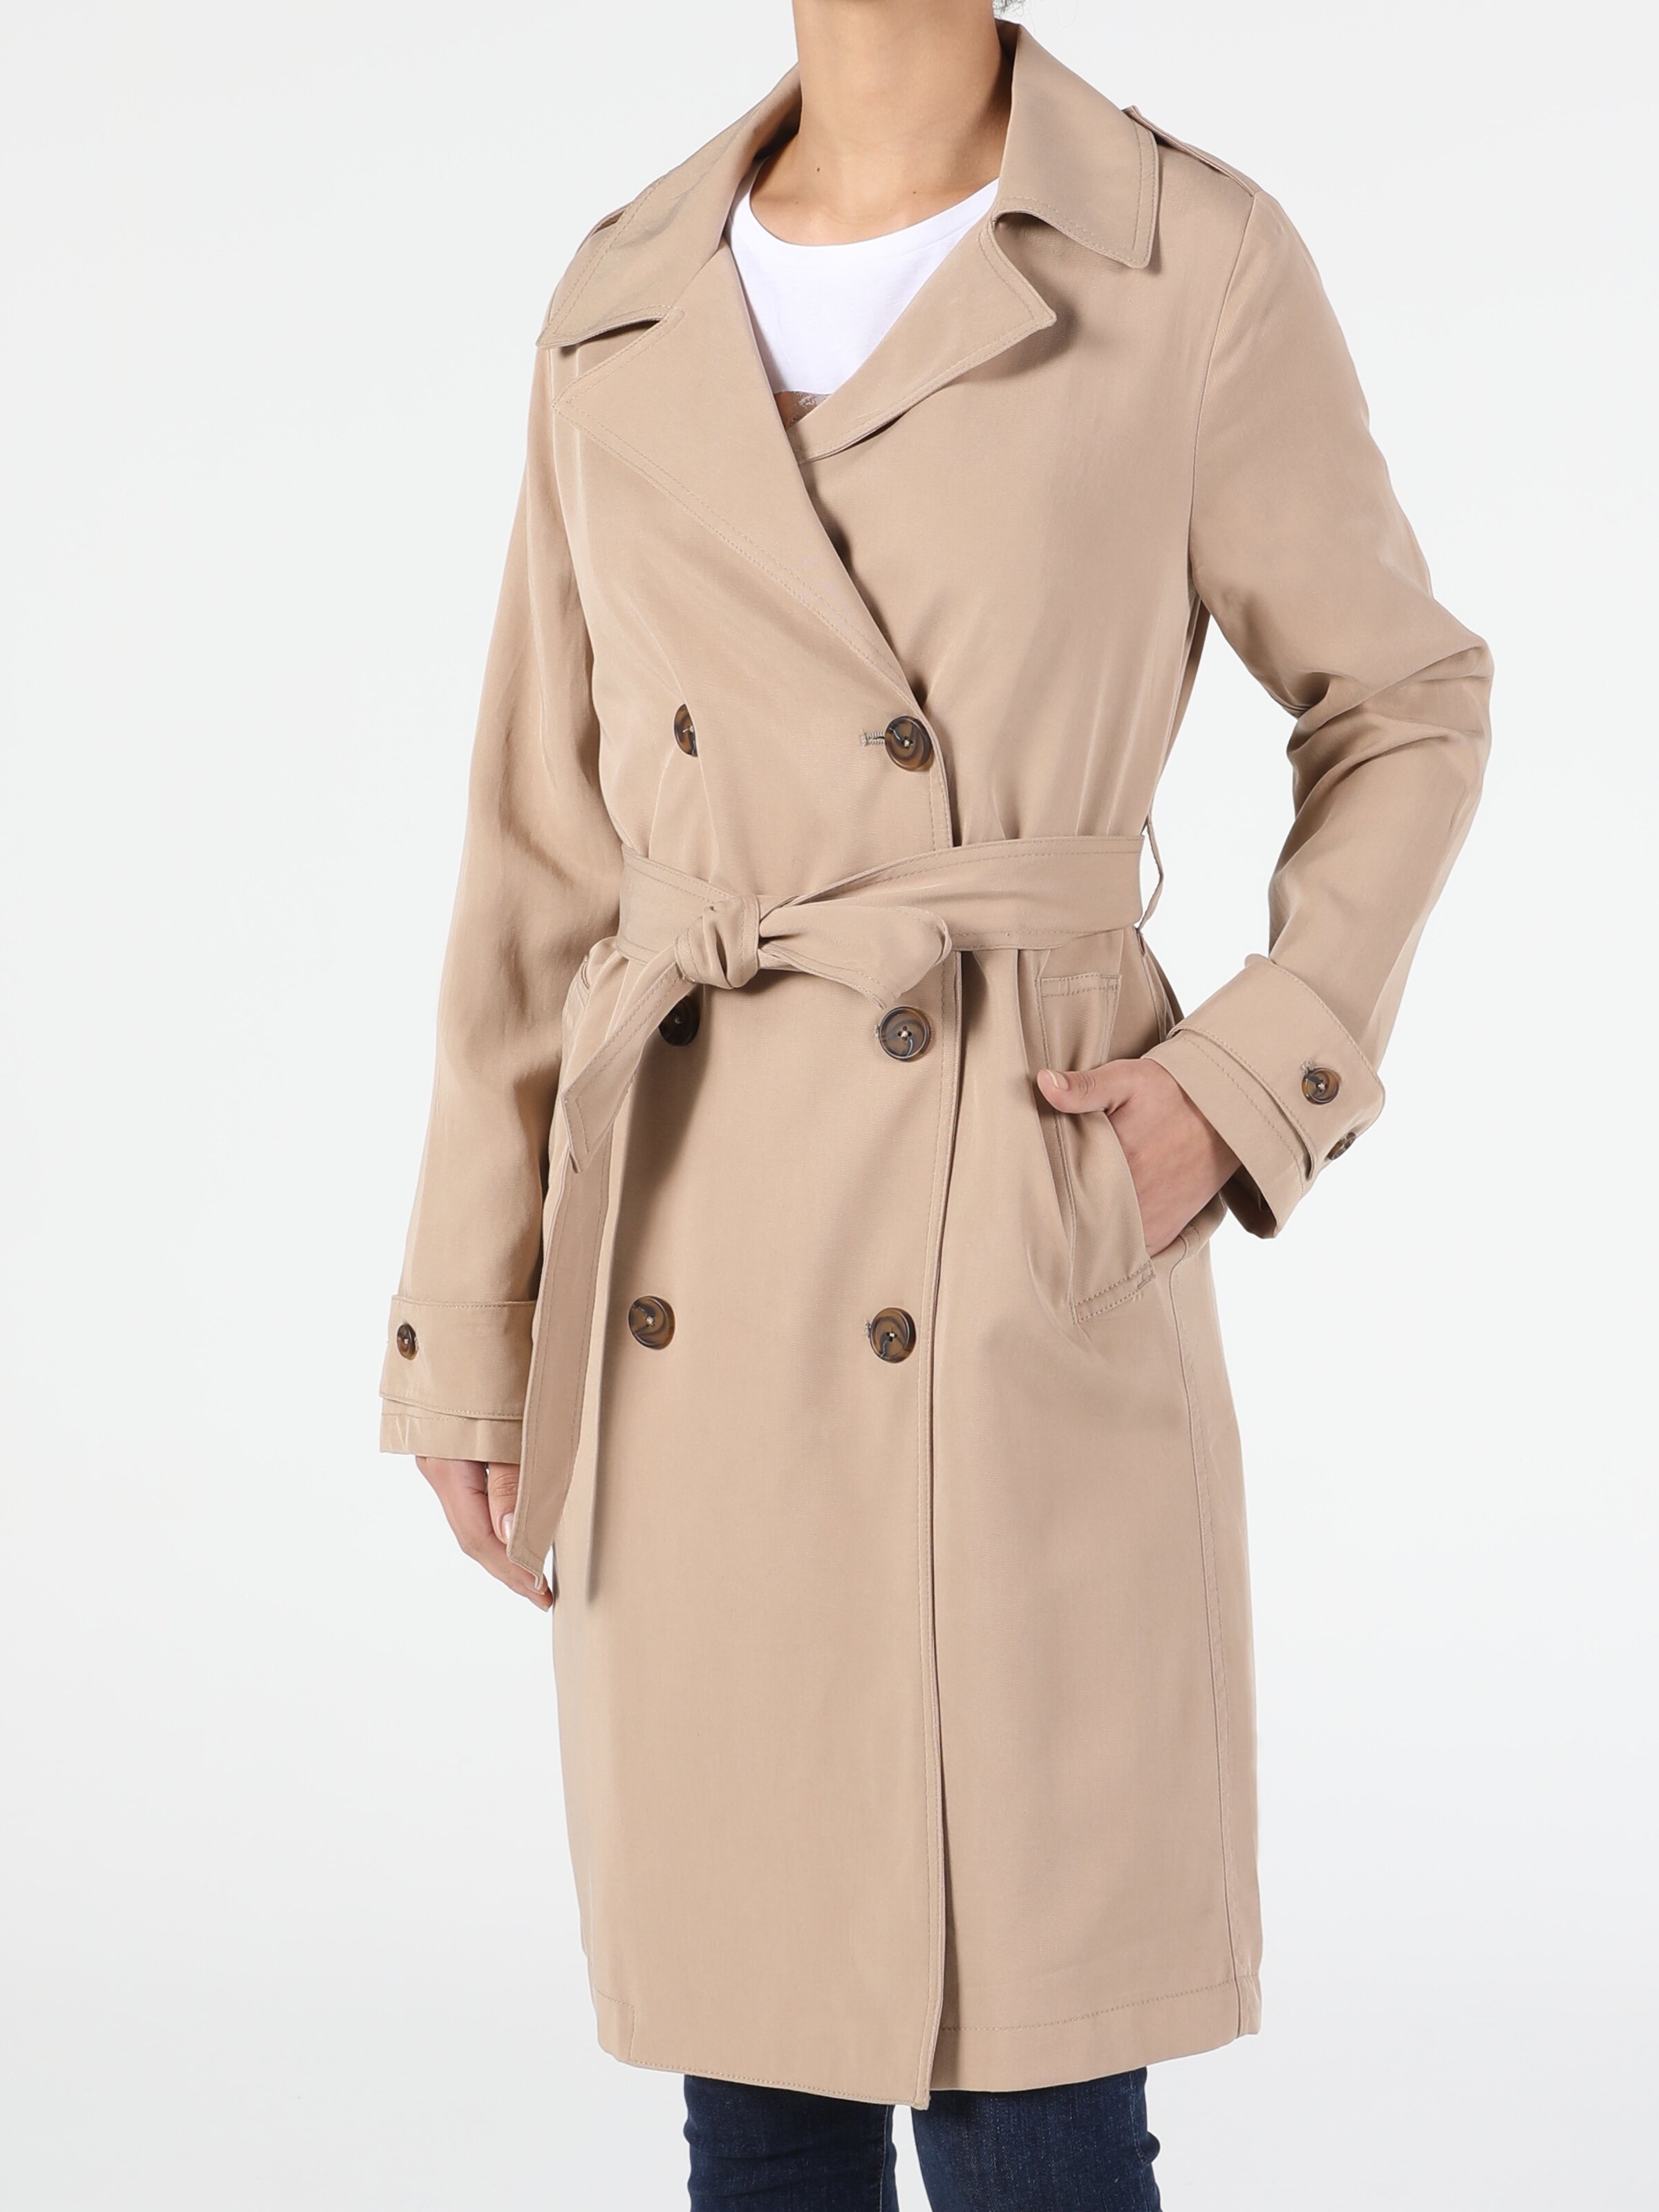 Показати інформацію про Куртка Жіноча Бежева Класичного Крою Cl1050603